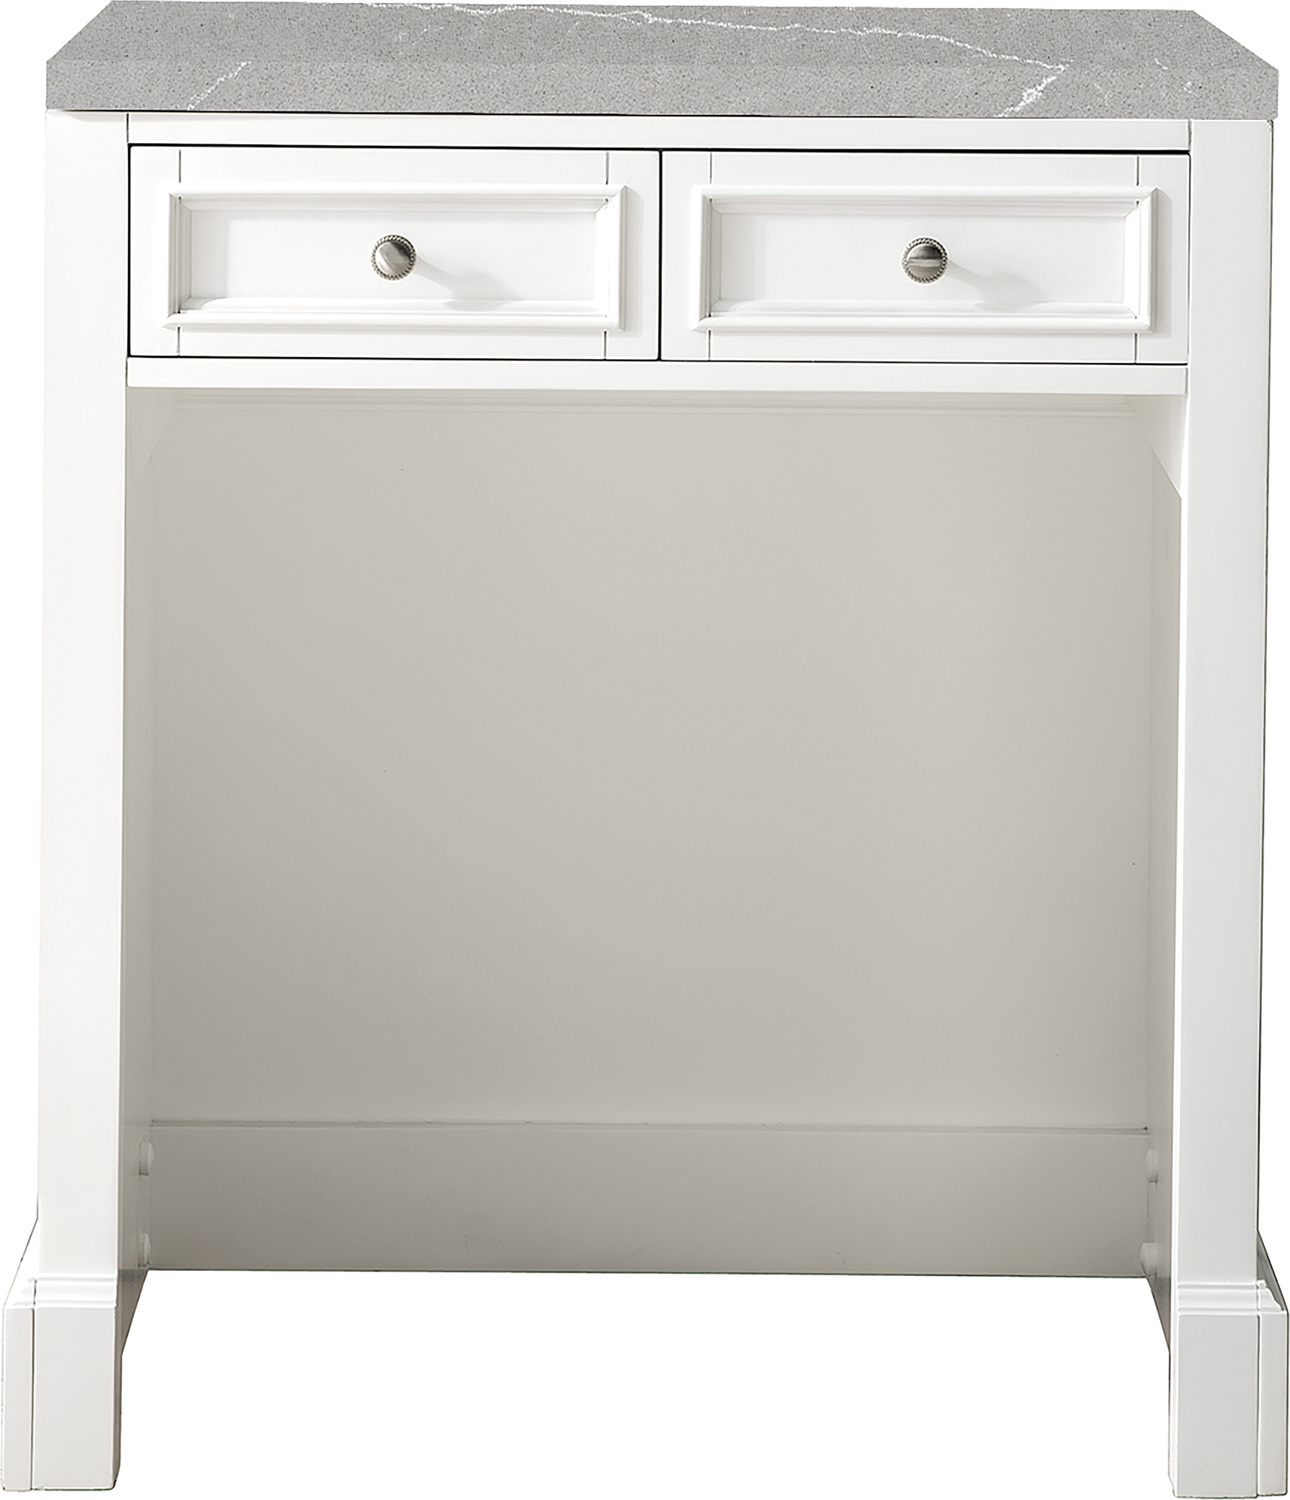 James Martin Countertop Unit Storage Cabinets Bright White